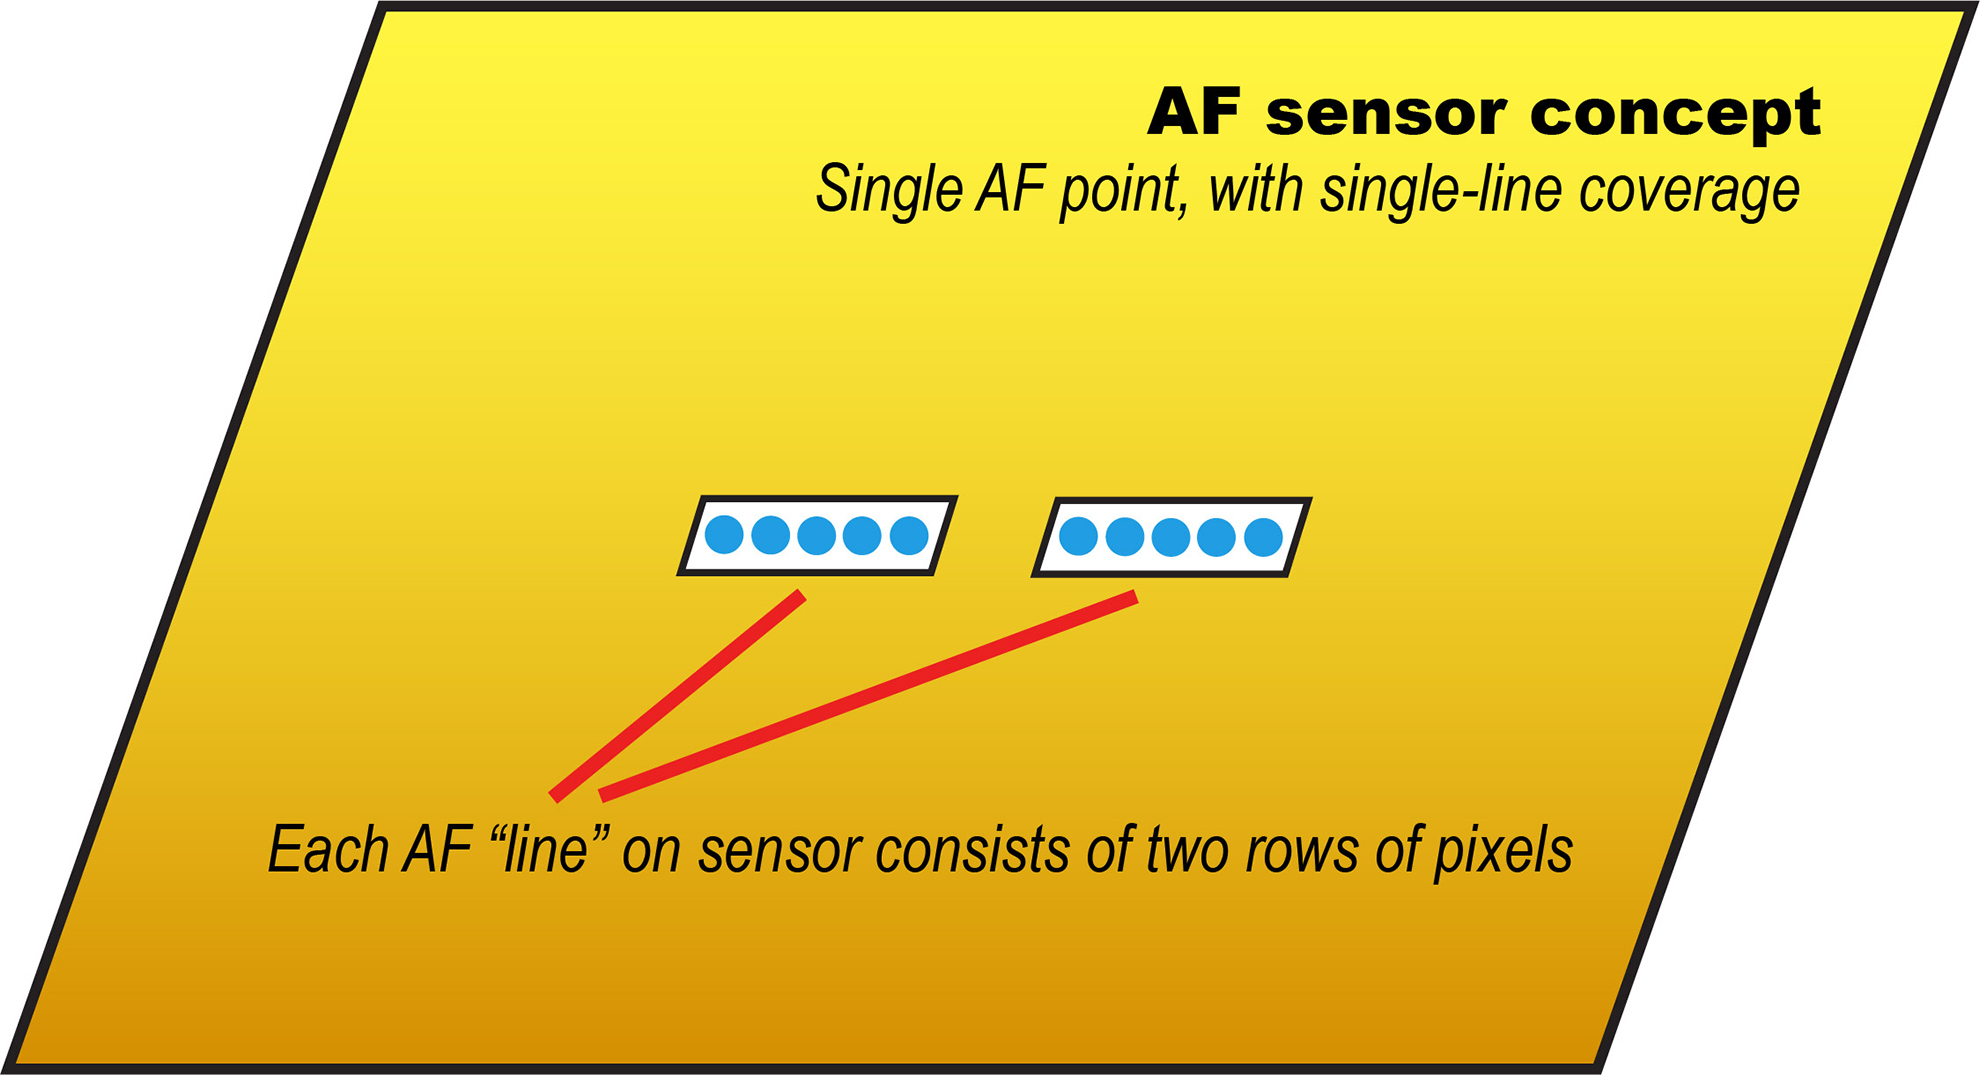 AF sensor concept